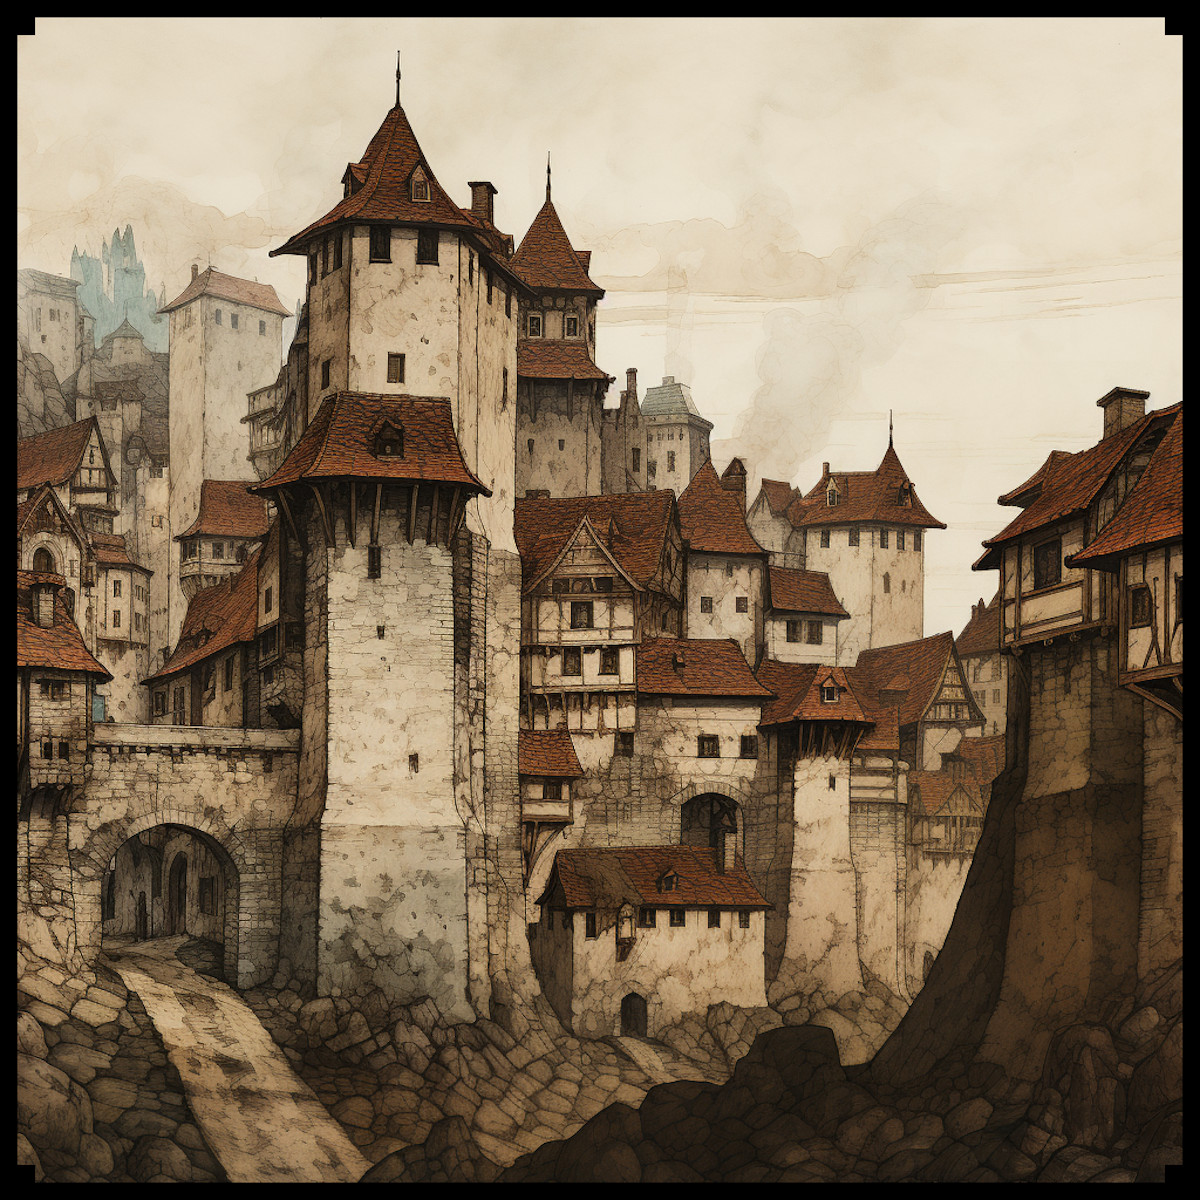 medieval city map assets pack, wonderdraft assets, etching illustration, fantasy map symbols